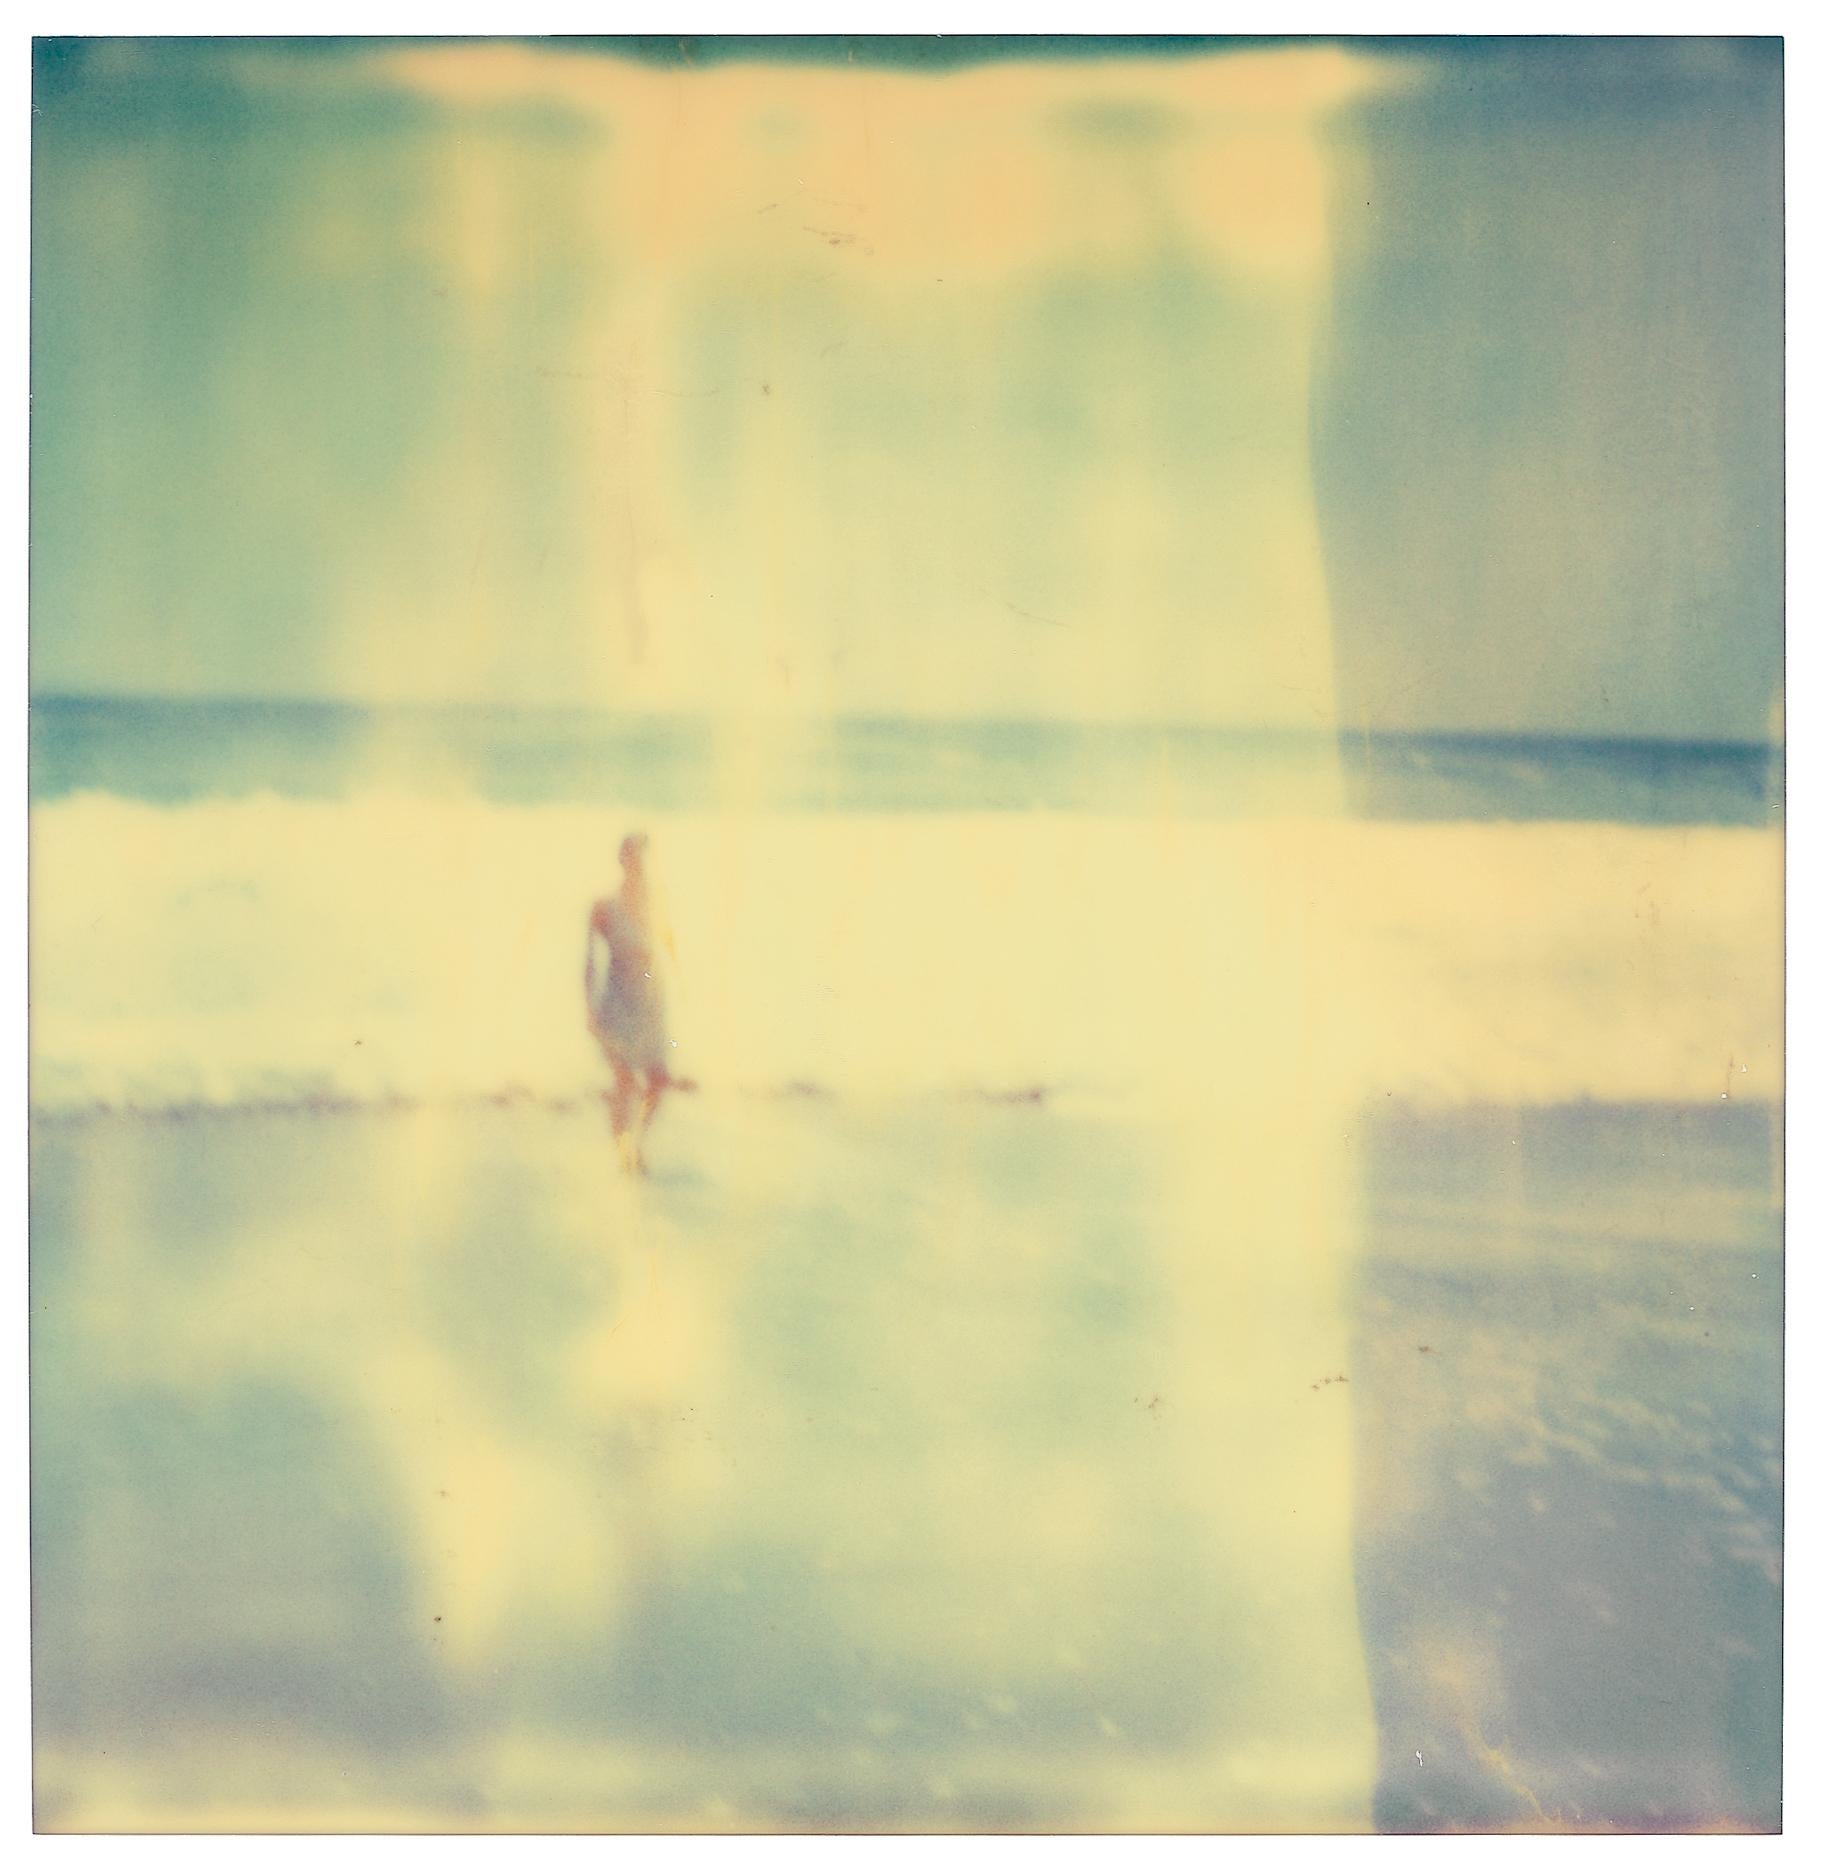 Femme à Malibu (Stranger than Paradise) - Polaroïd, analogique, 21e siècle, Femme - Contemporain Photograph par Stefanie Schneider